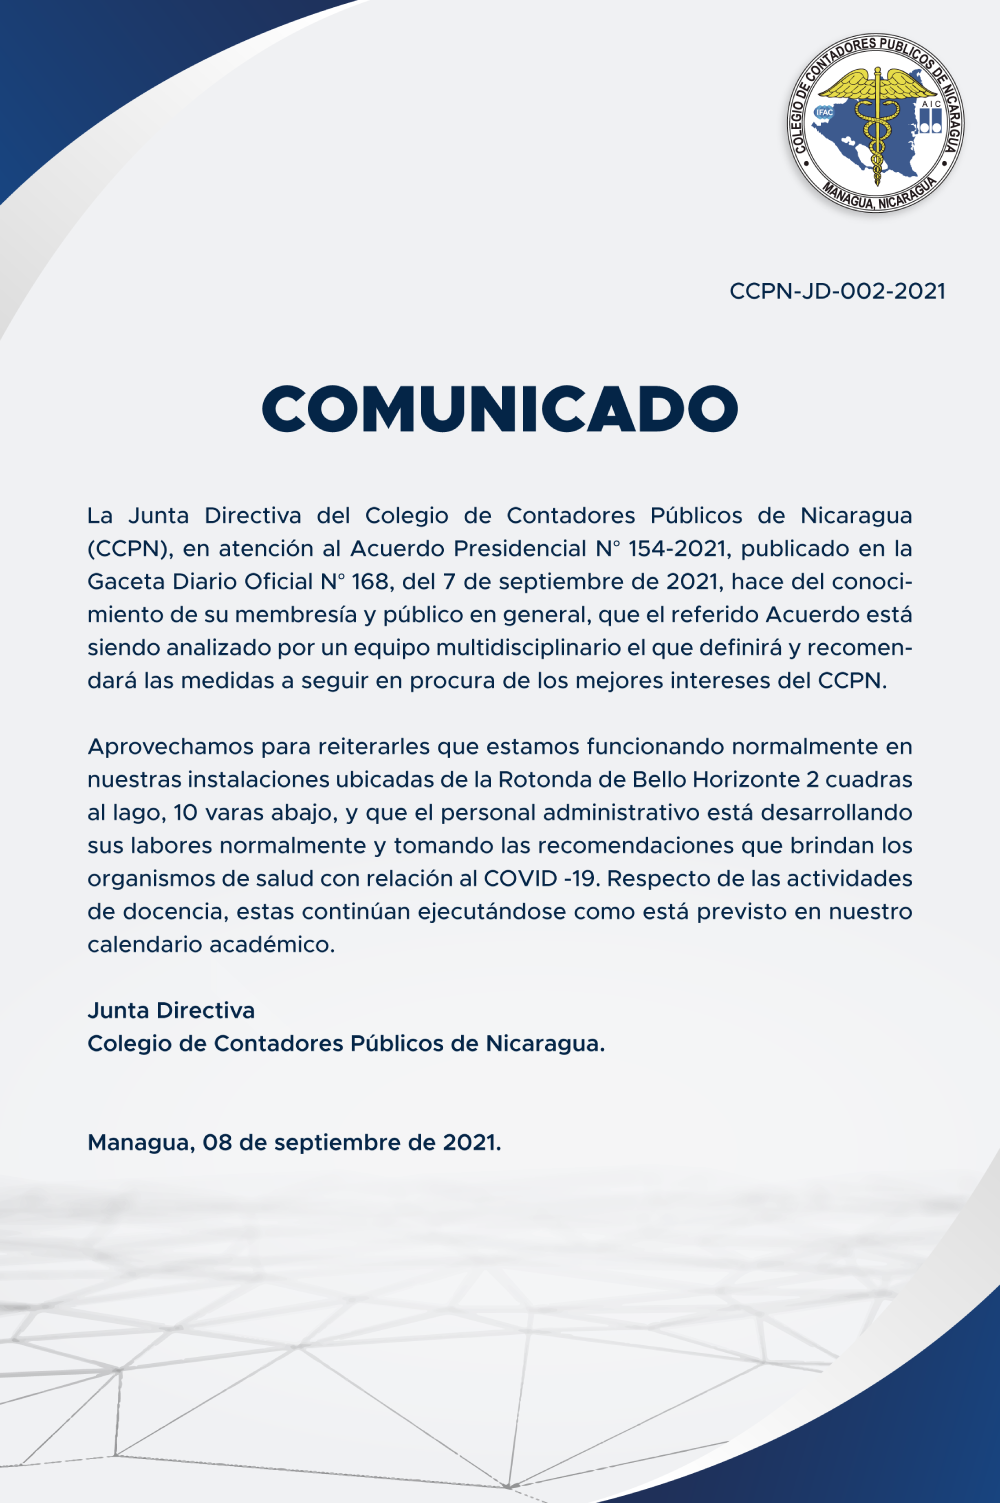 COMUNICADO-CCPN-JD-002-2021